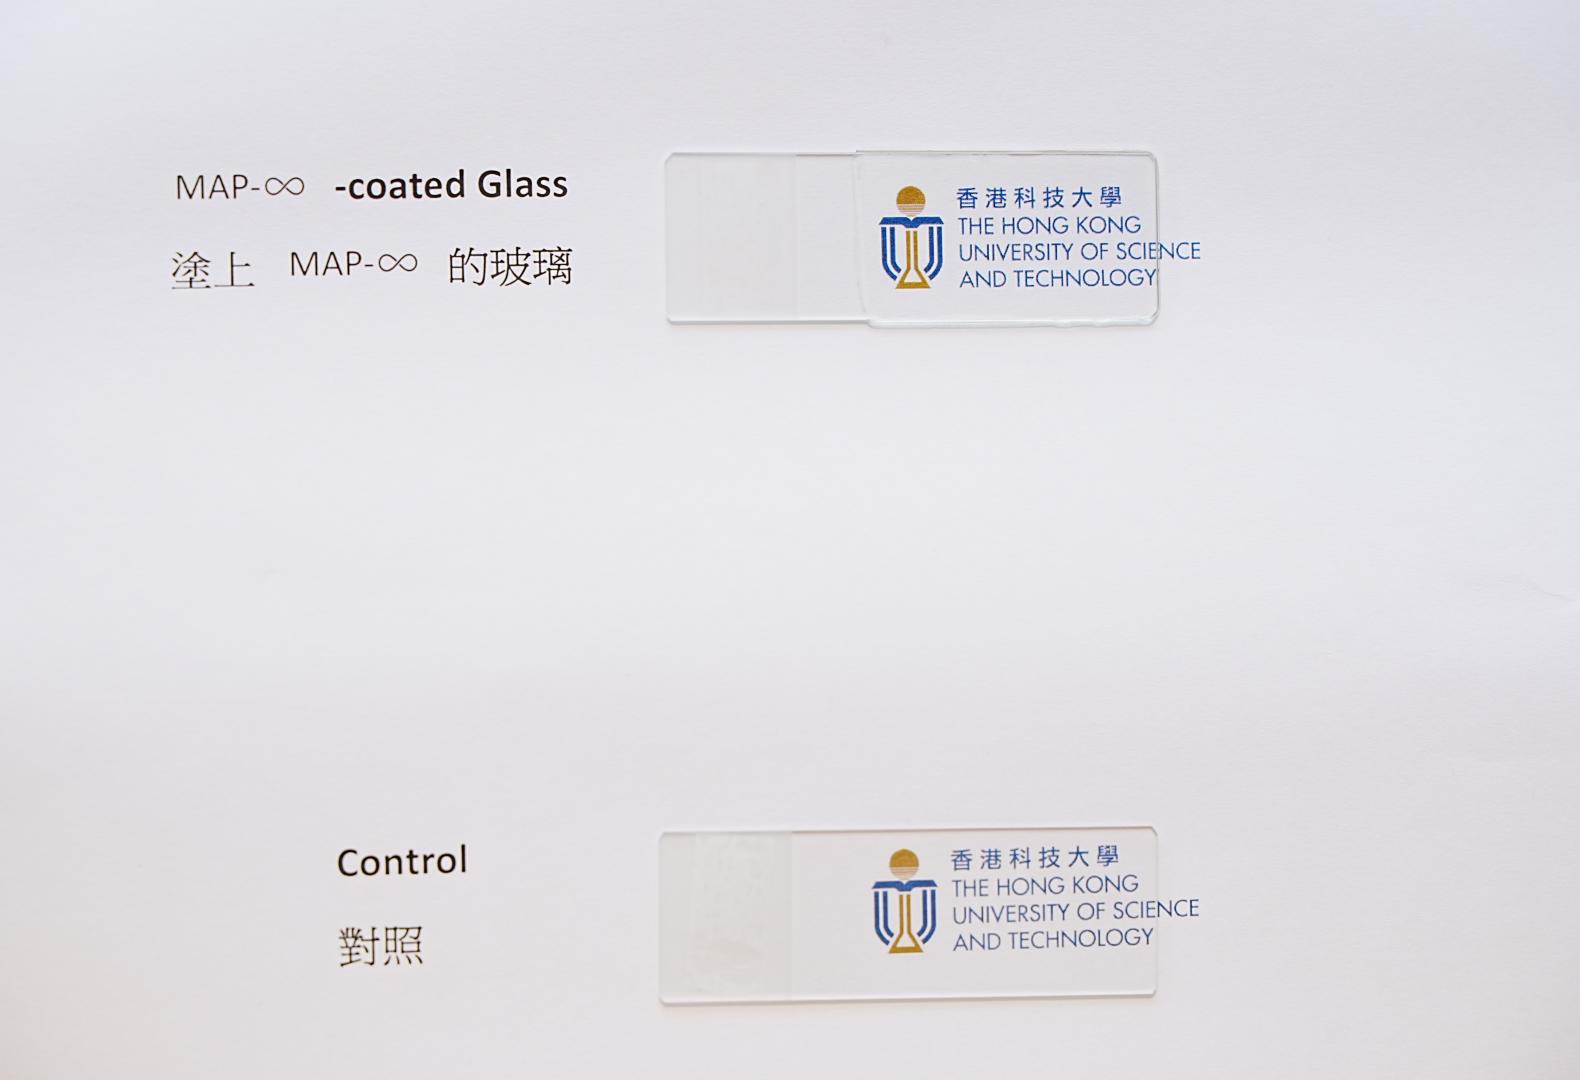 MAP-∞的高透光度让涂层能应用到在玻璃表面上而不会影响其透明度。